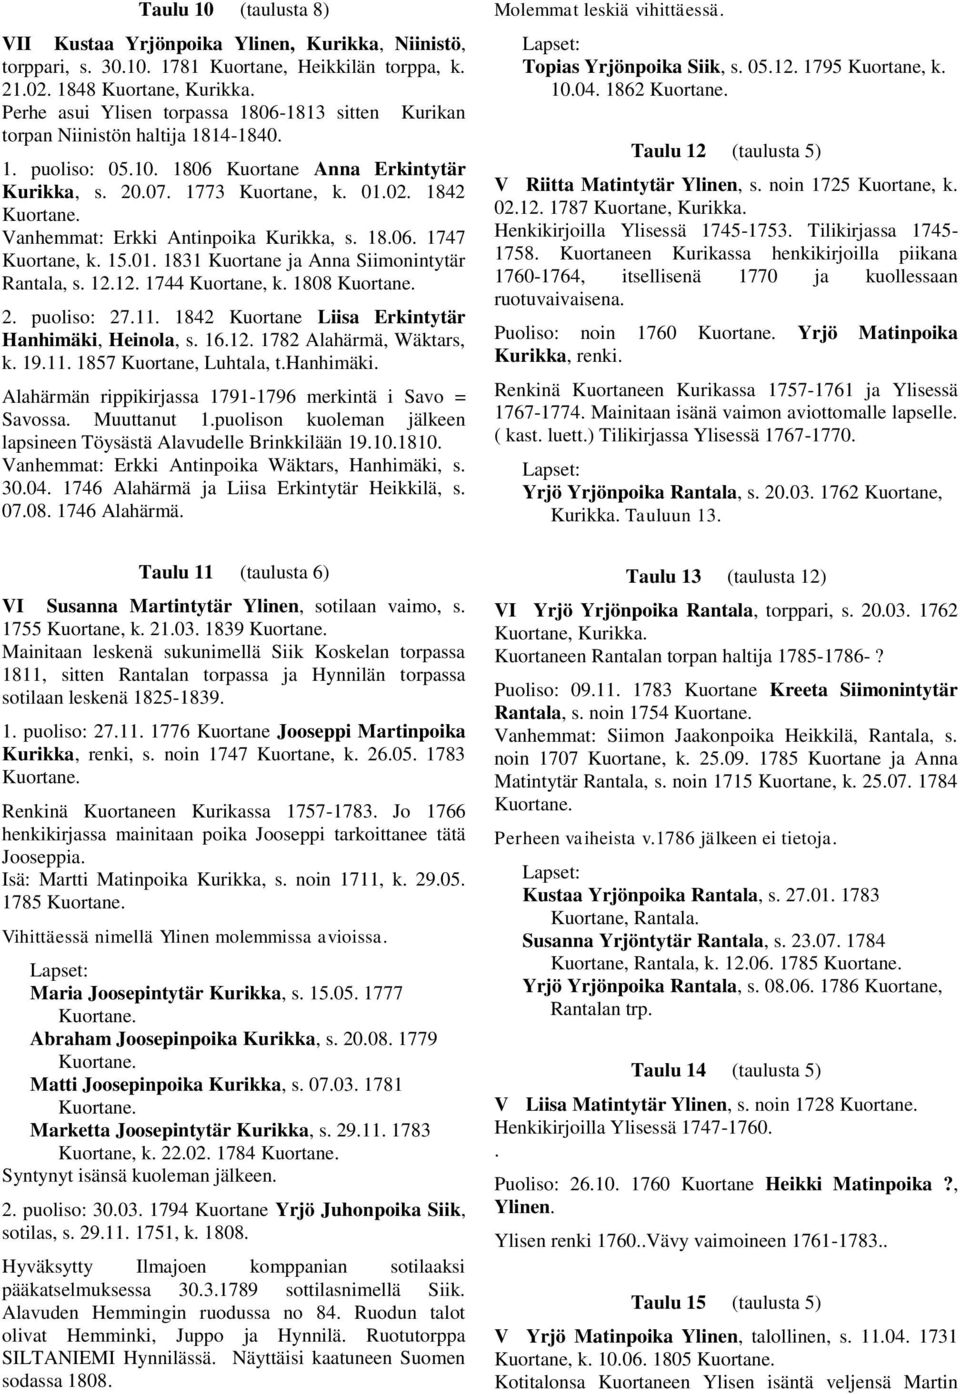 1842 Vanhemmat: Erkki Antinpoika Kurikka, s. 18.06. 1747 Kuortane, k. 15.01. 1831 Kuortane ja Anna Siimonintytär Rantala, s. 12.12. 1744 Kuortane, k. 1808 2. puoliso: 27.11.